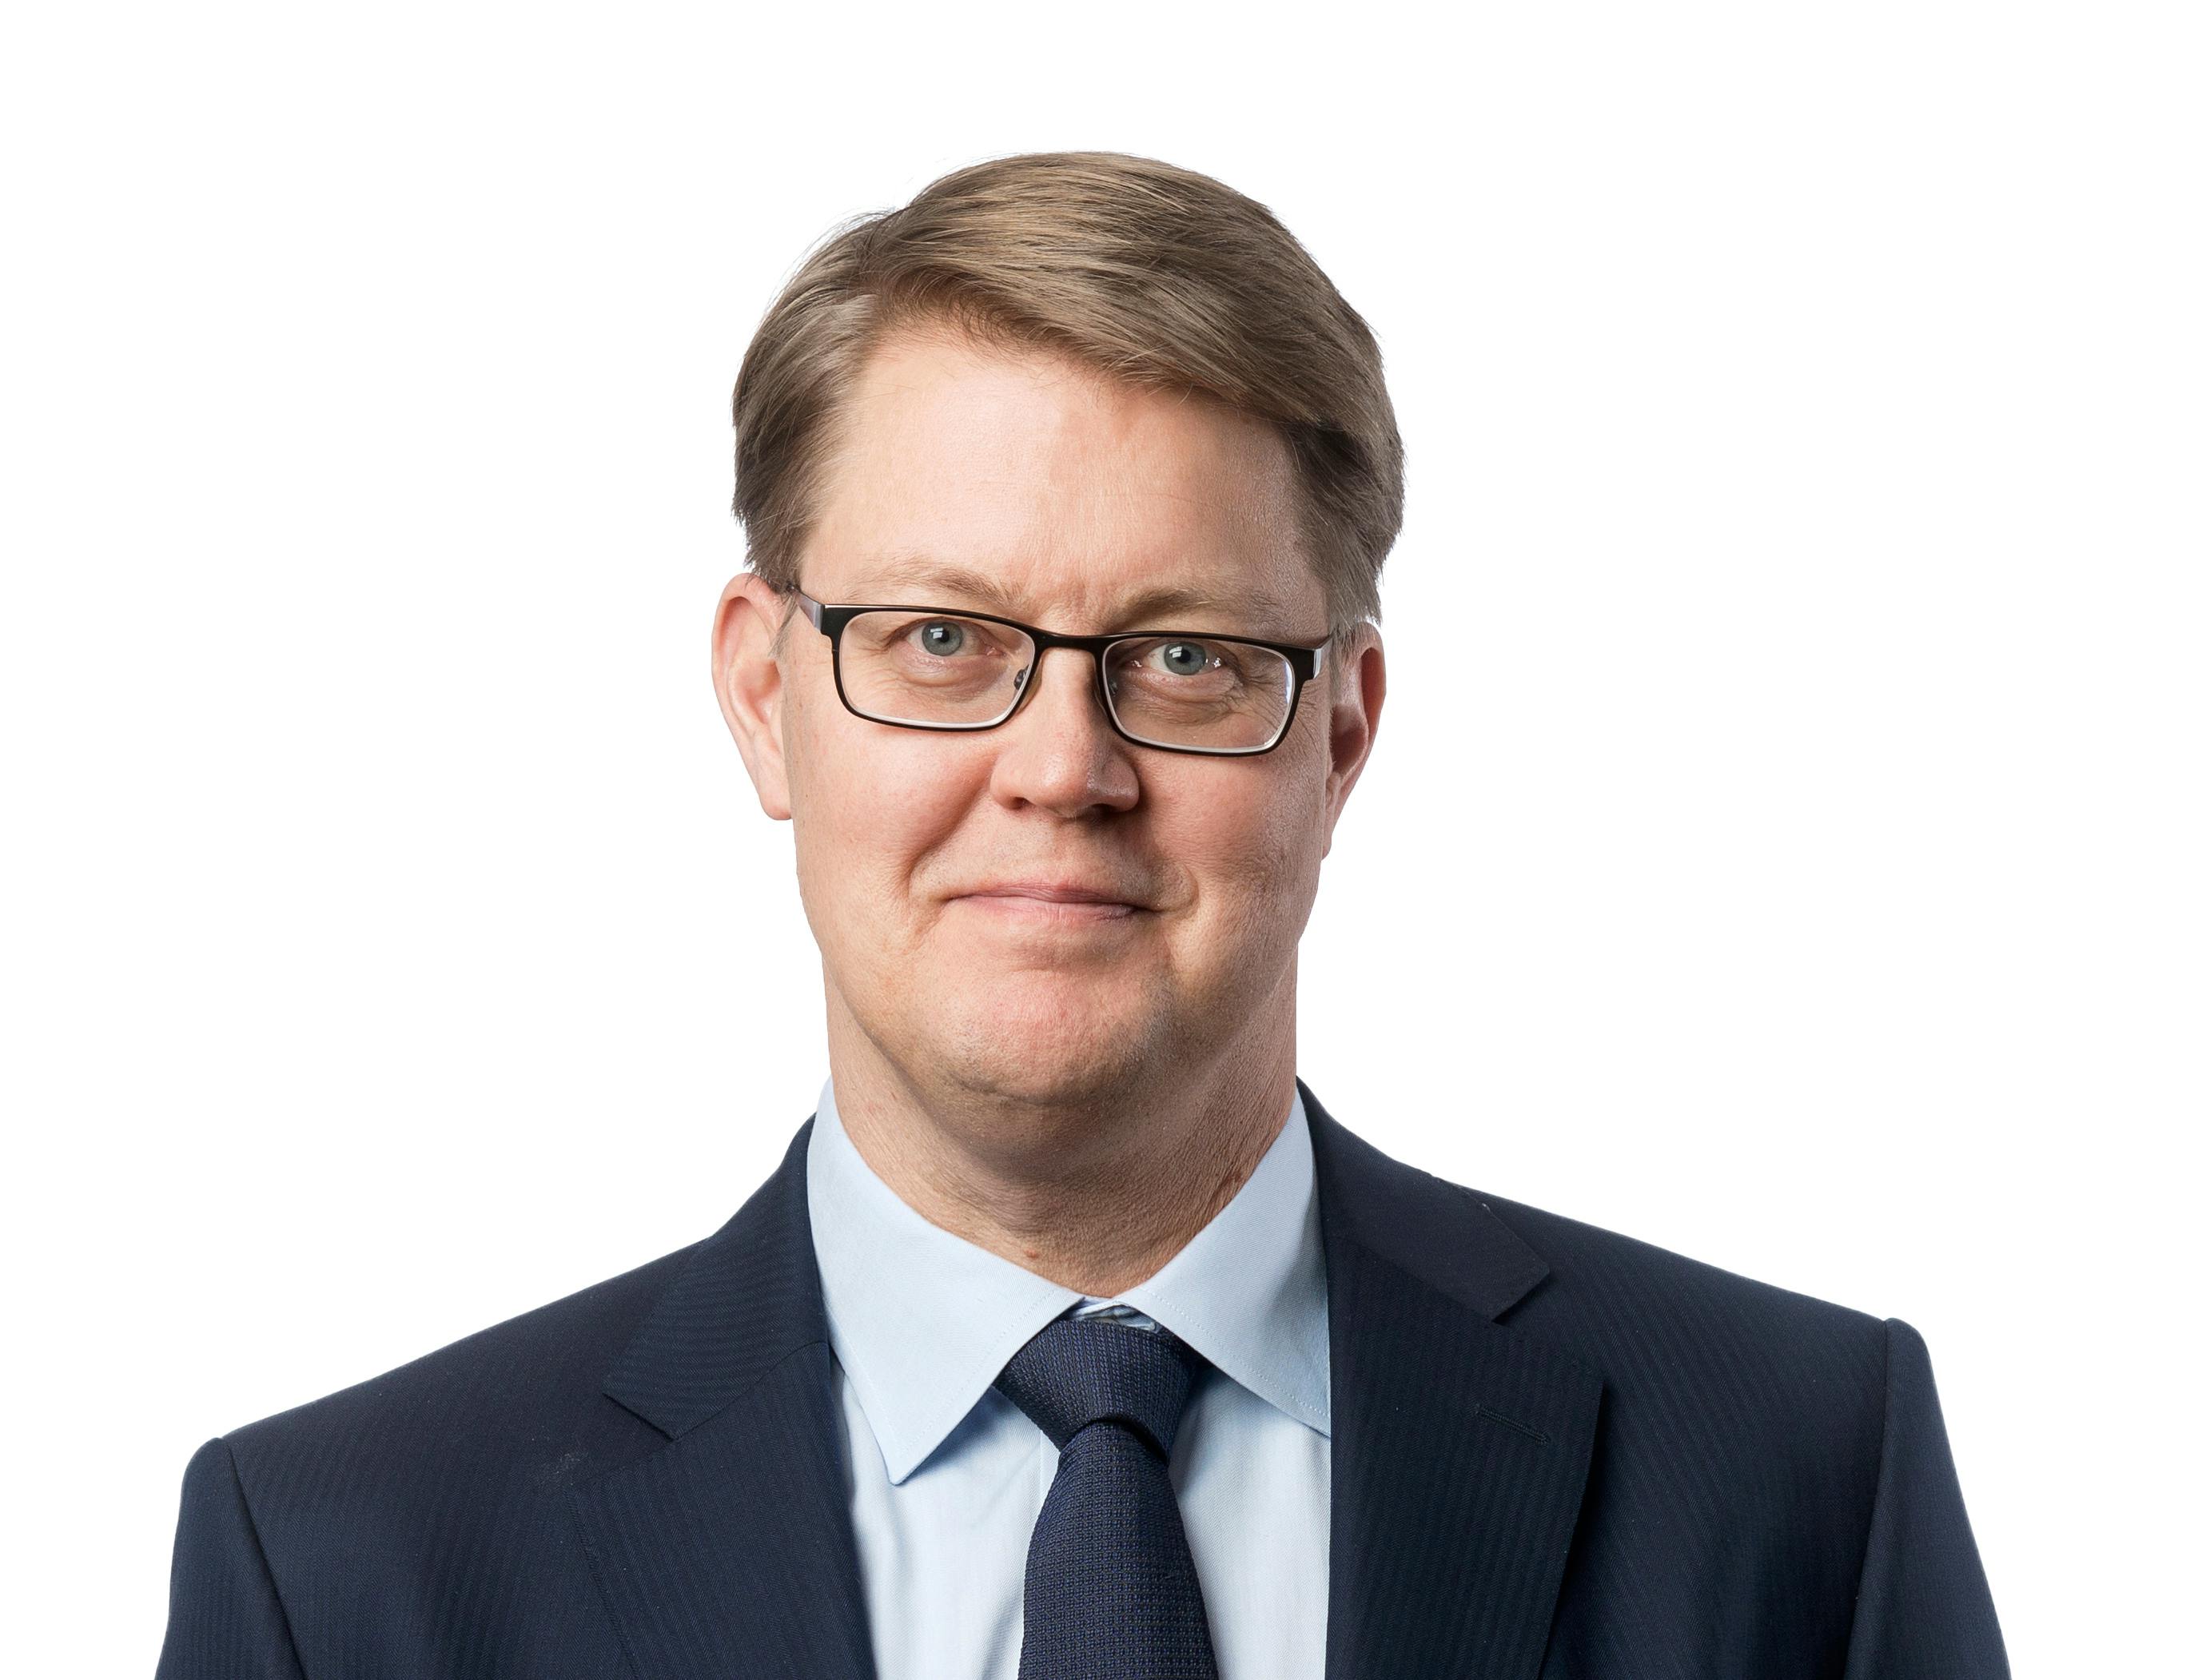 Jens Birgersson (3)
CEO, GM